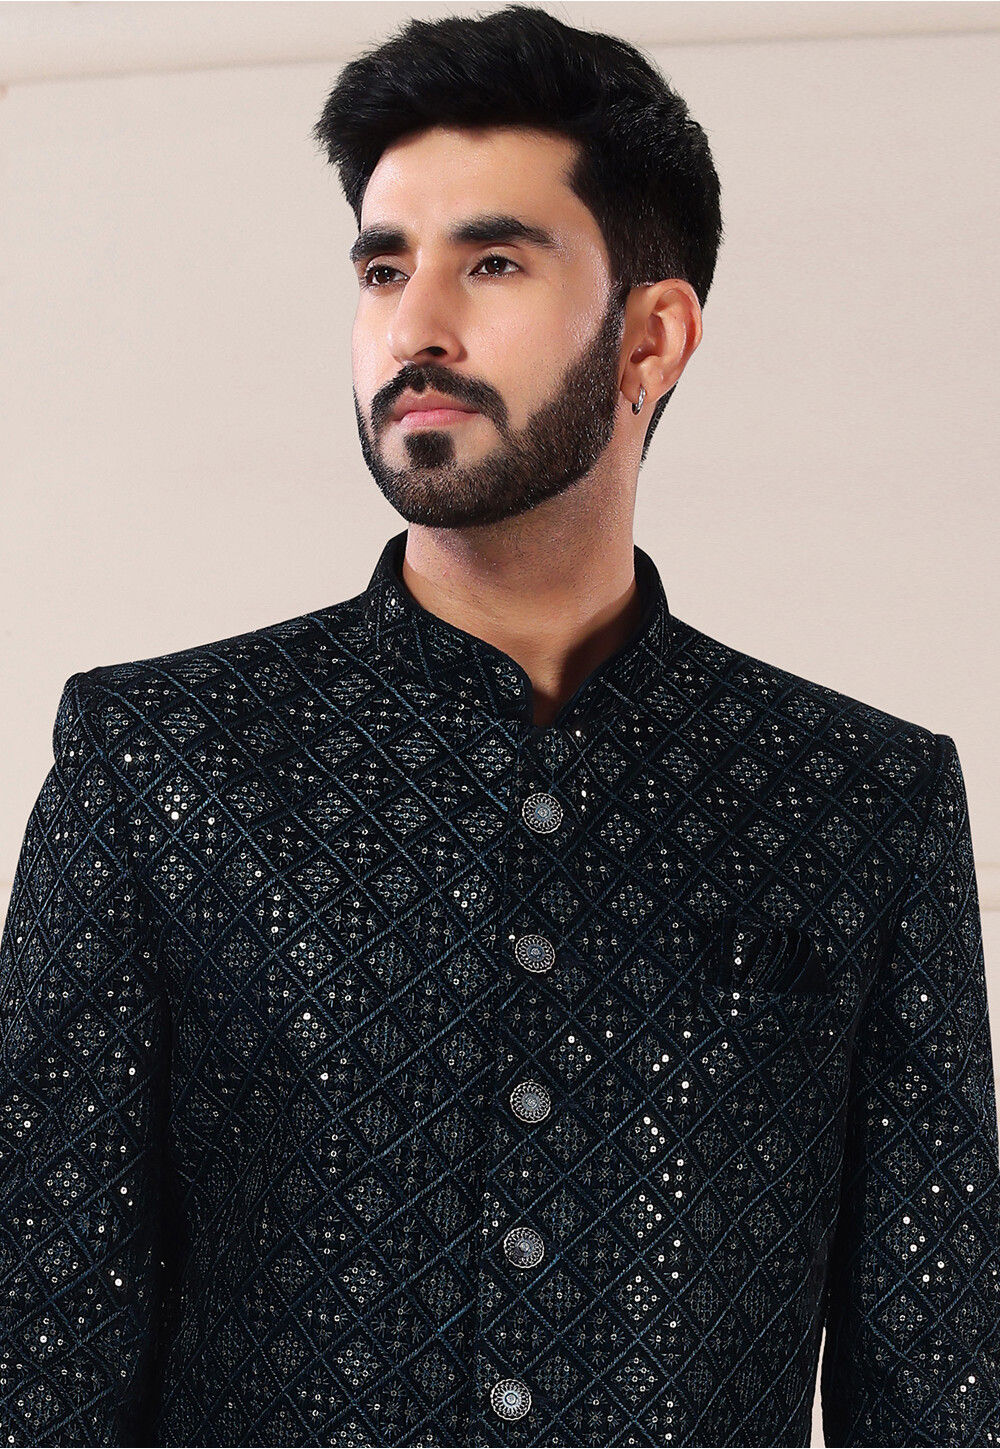 Buy Embroidered Velvet Jodhpuri Suit in Black Online : MUY979 - Utsav ...